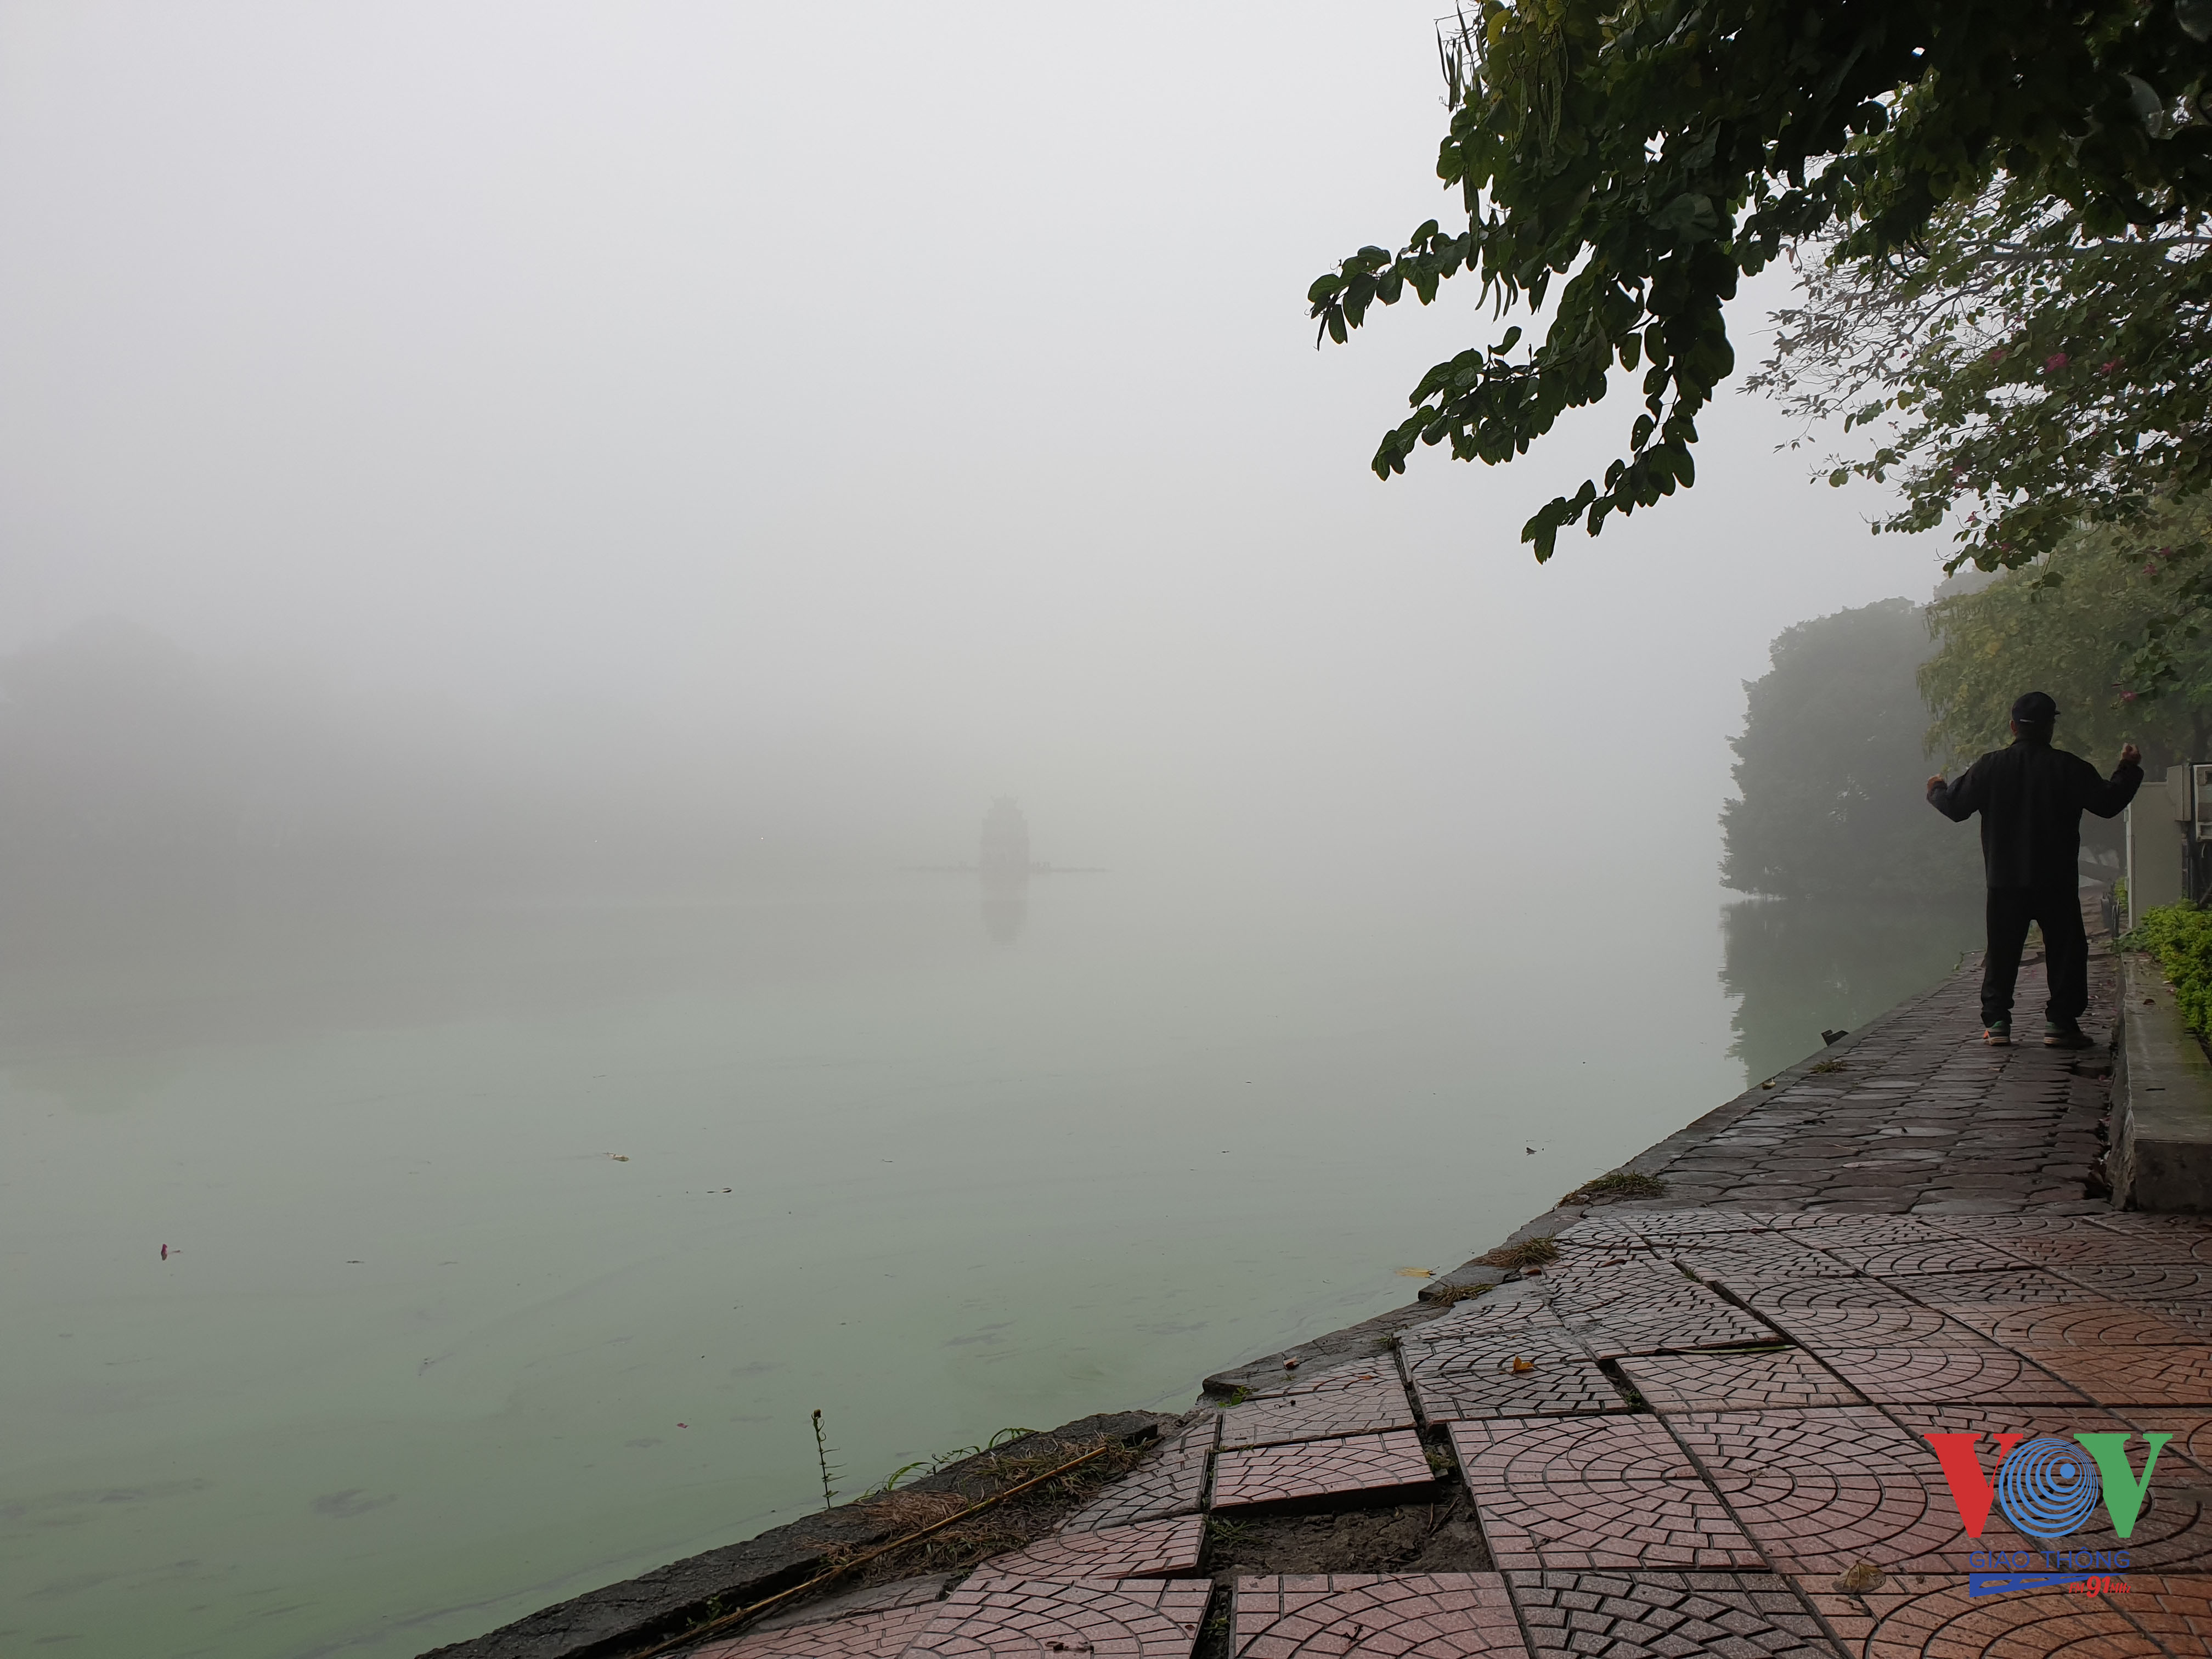 6 Những người đi tập thể dục quanh bờ hồ Hoàn Kiếm không thể nhìn rõ tháp rùa giữa hồ.